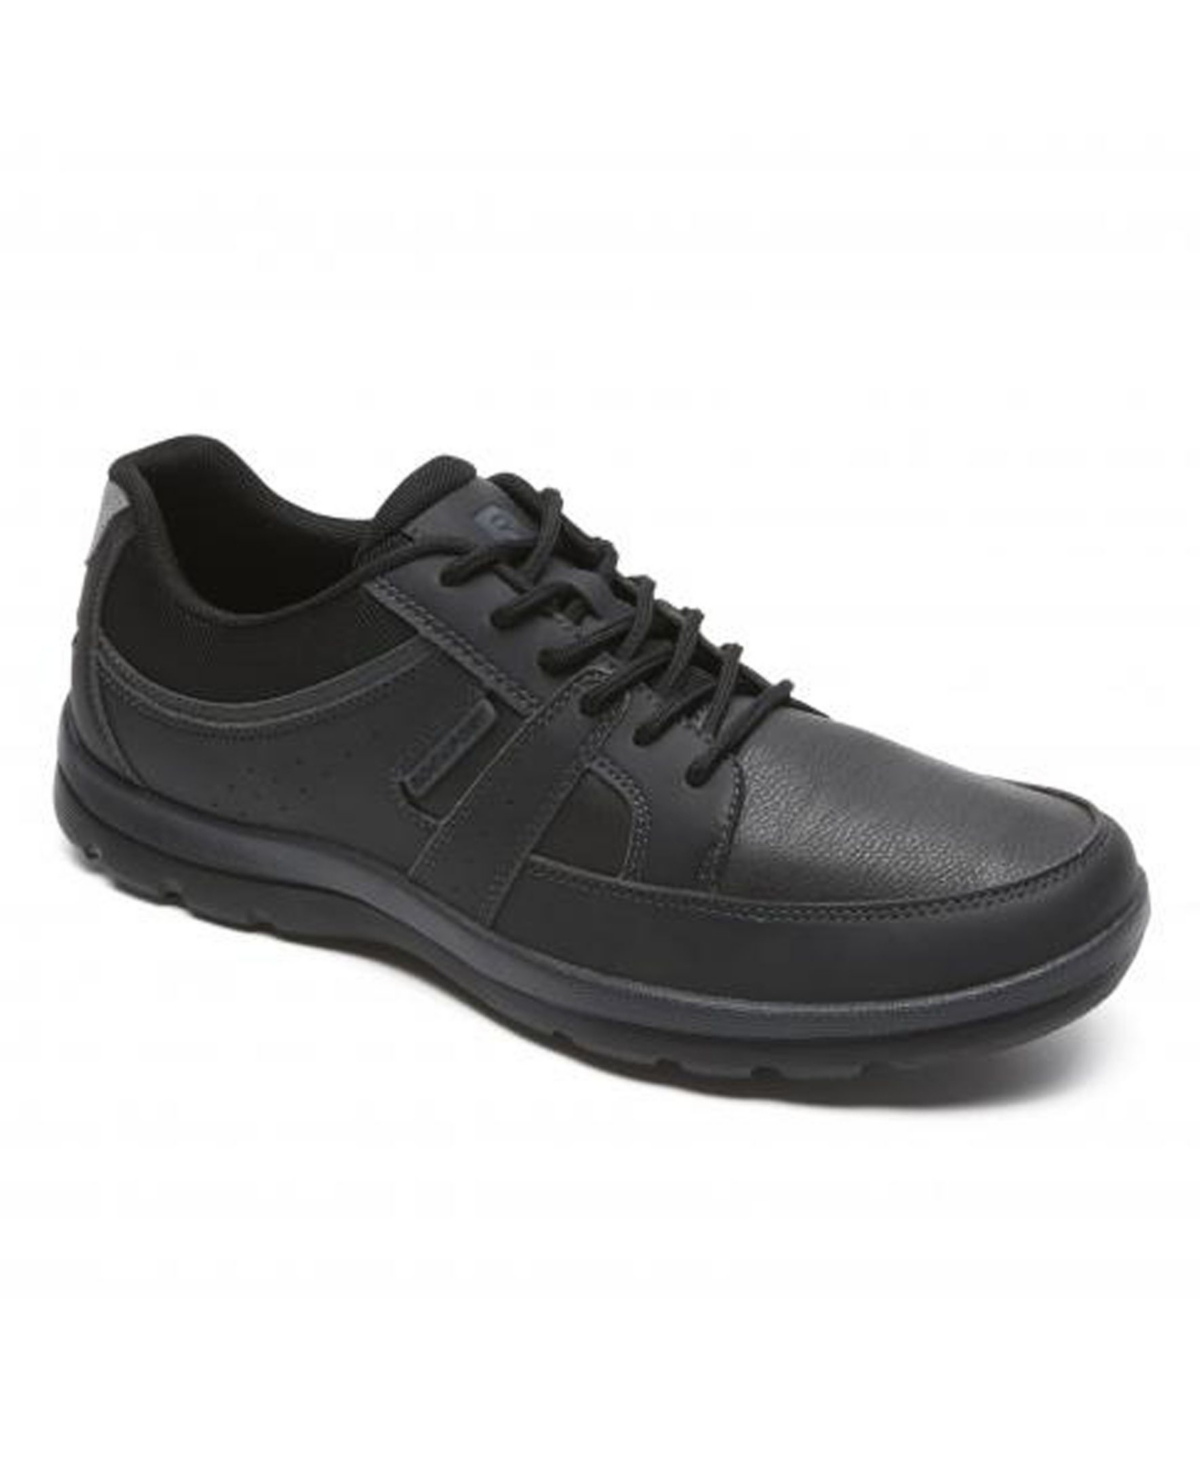 Men's Get Your Kicks Blucher Shoes - Black